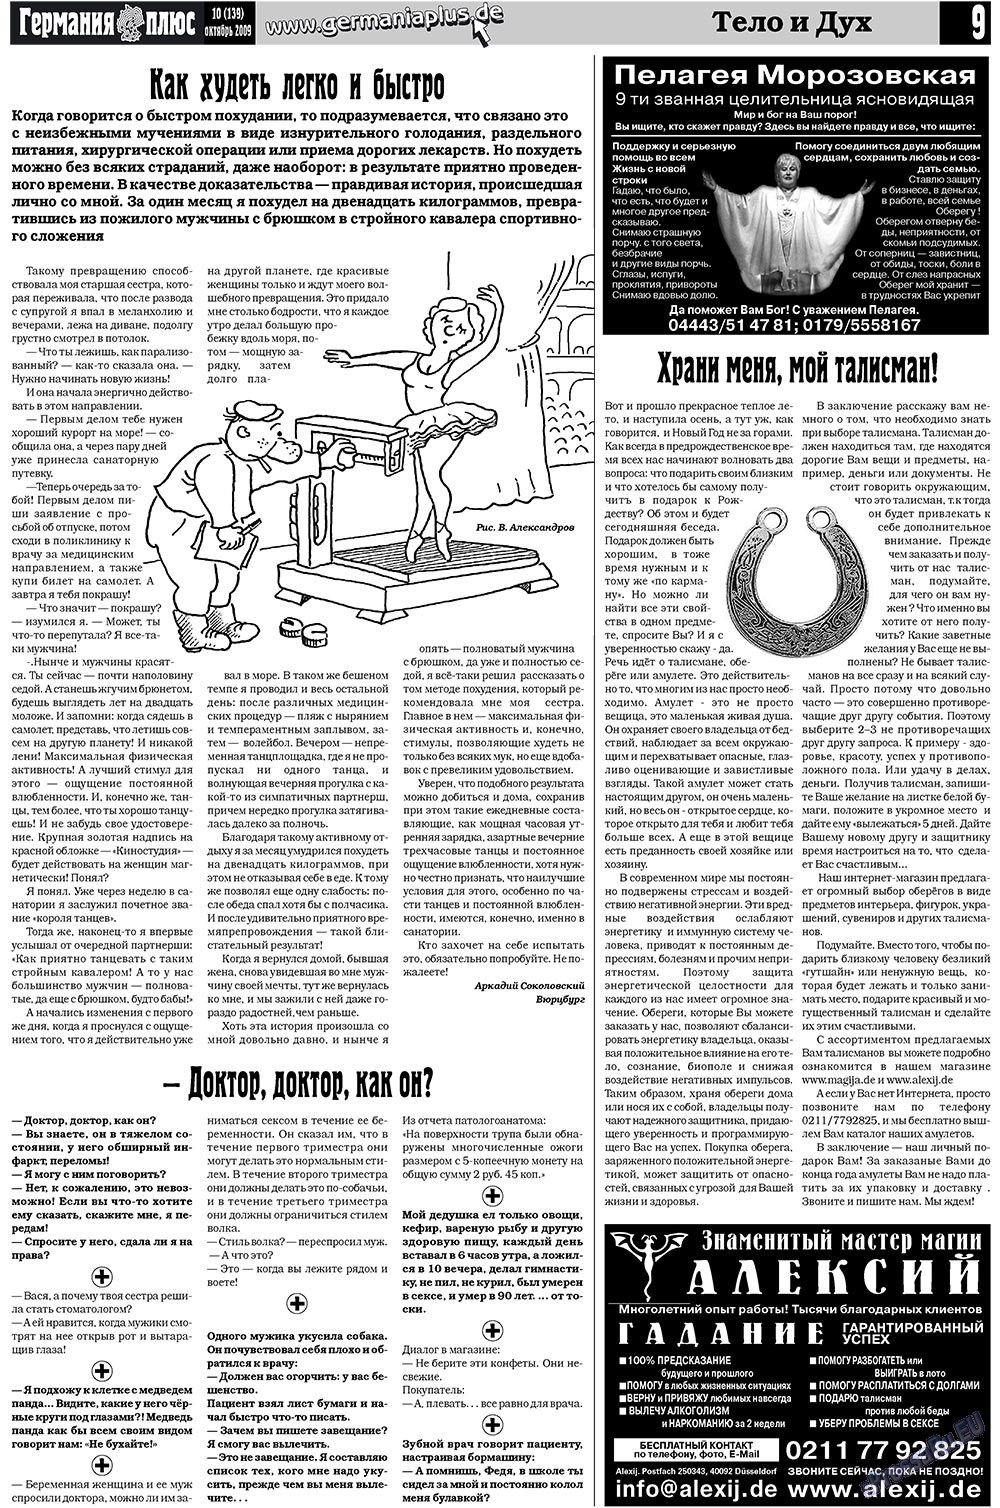 Германия плюс, газета. 2009 №10 стр.9